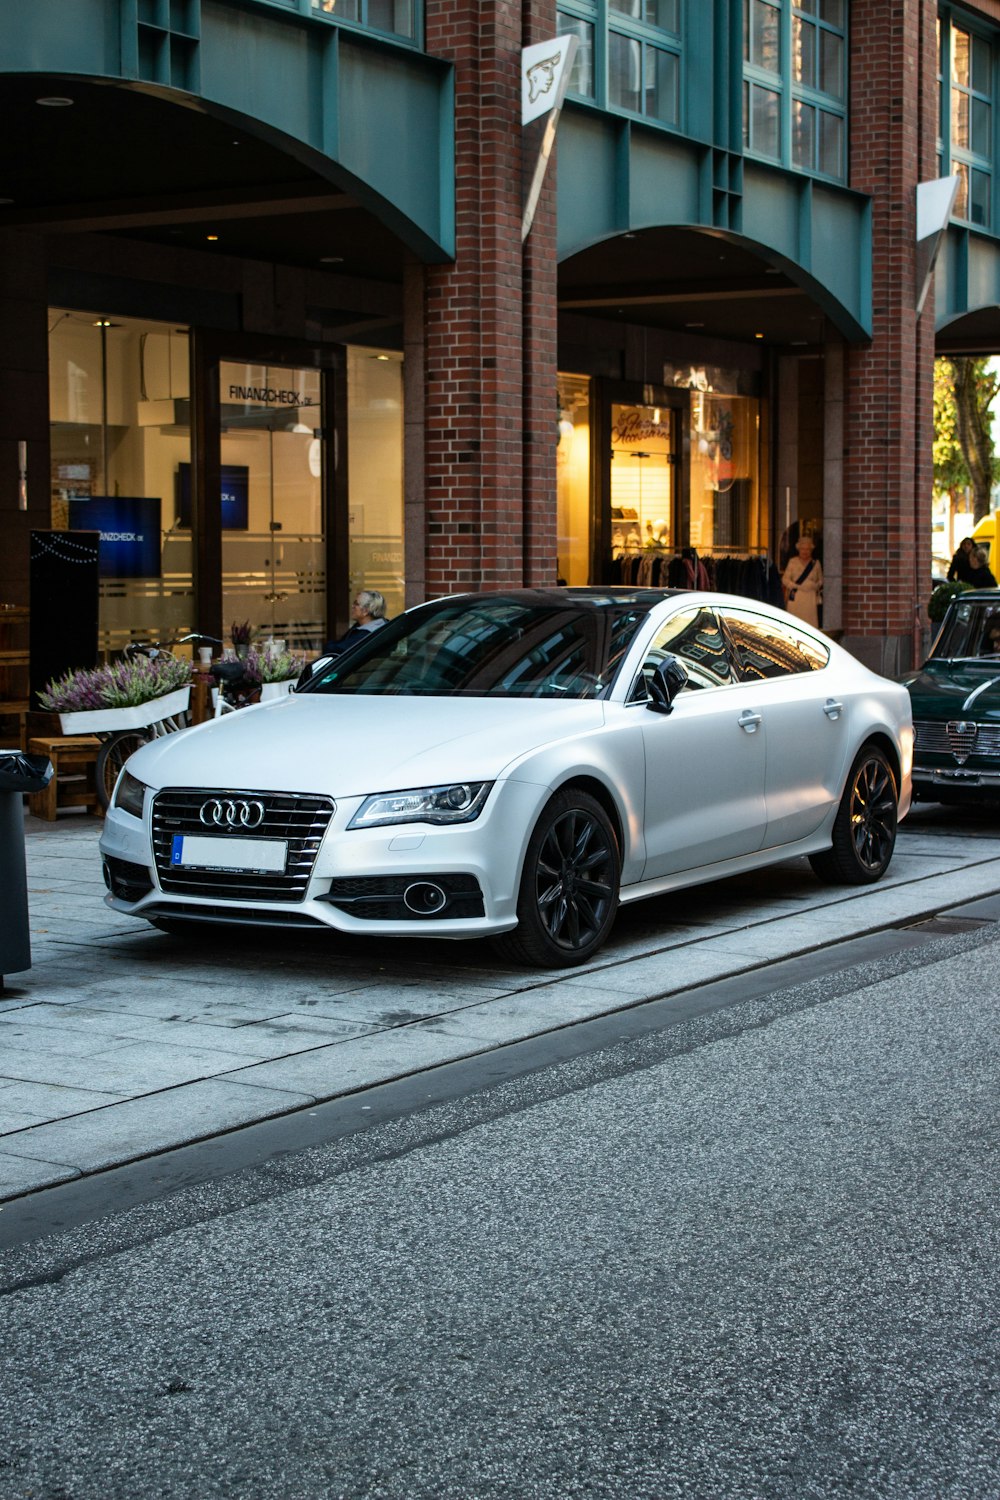 Audi sedán plateado estacionado en la calle al lado de restaurar